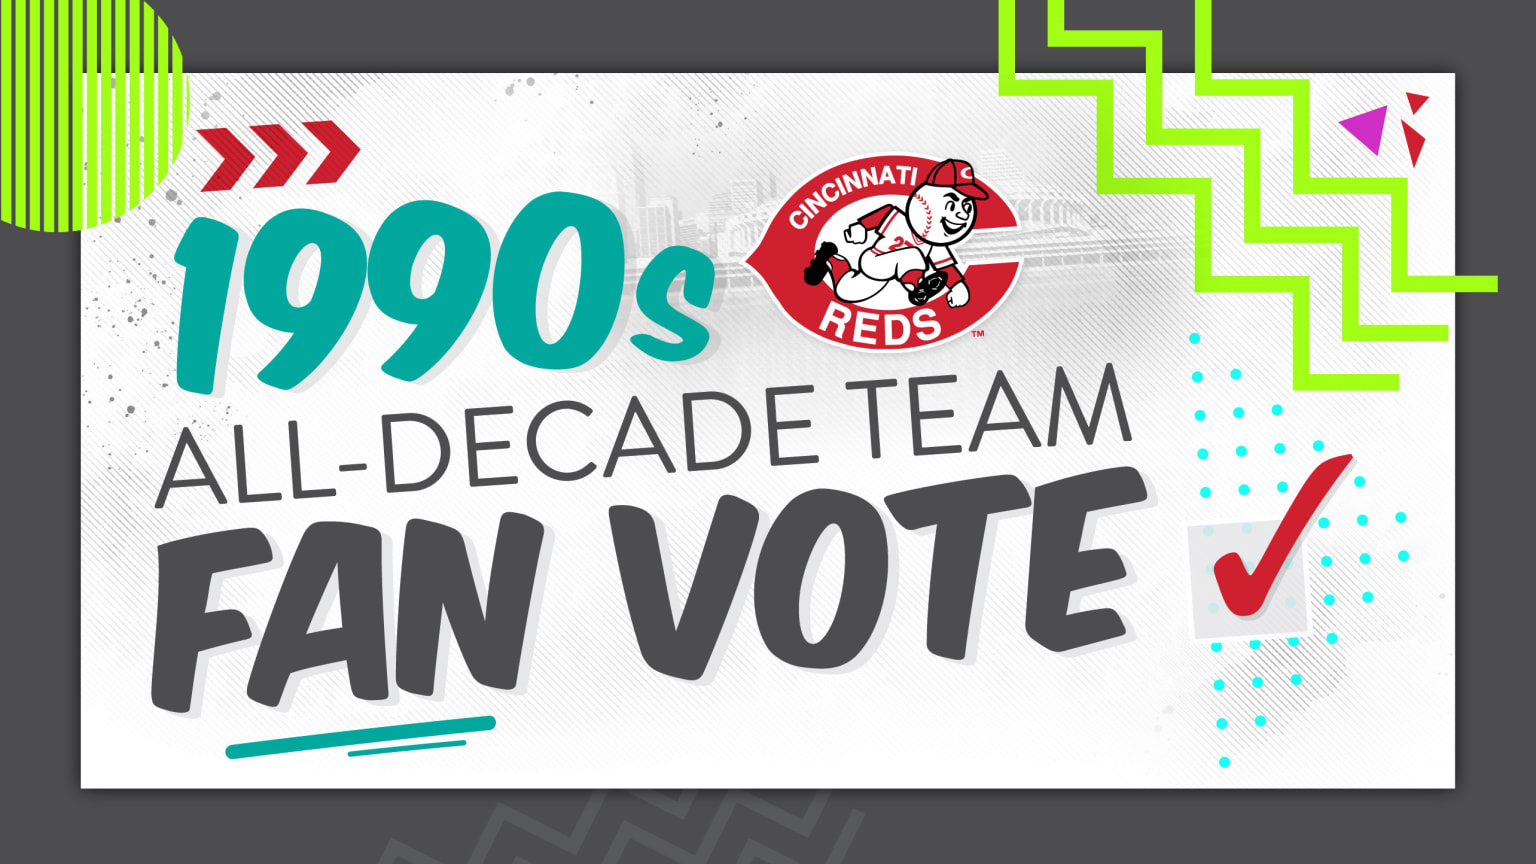 1990s All-Decade Team Vote